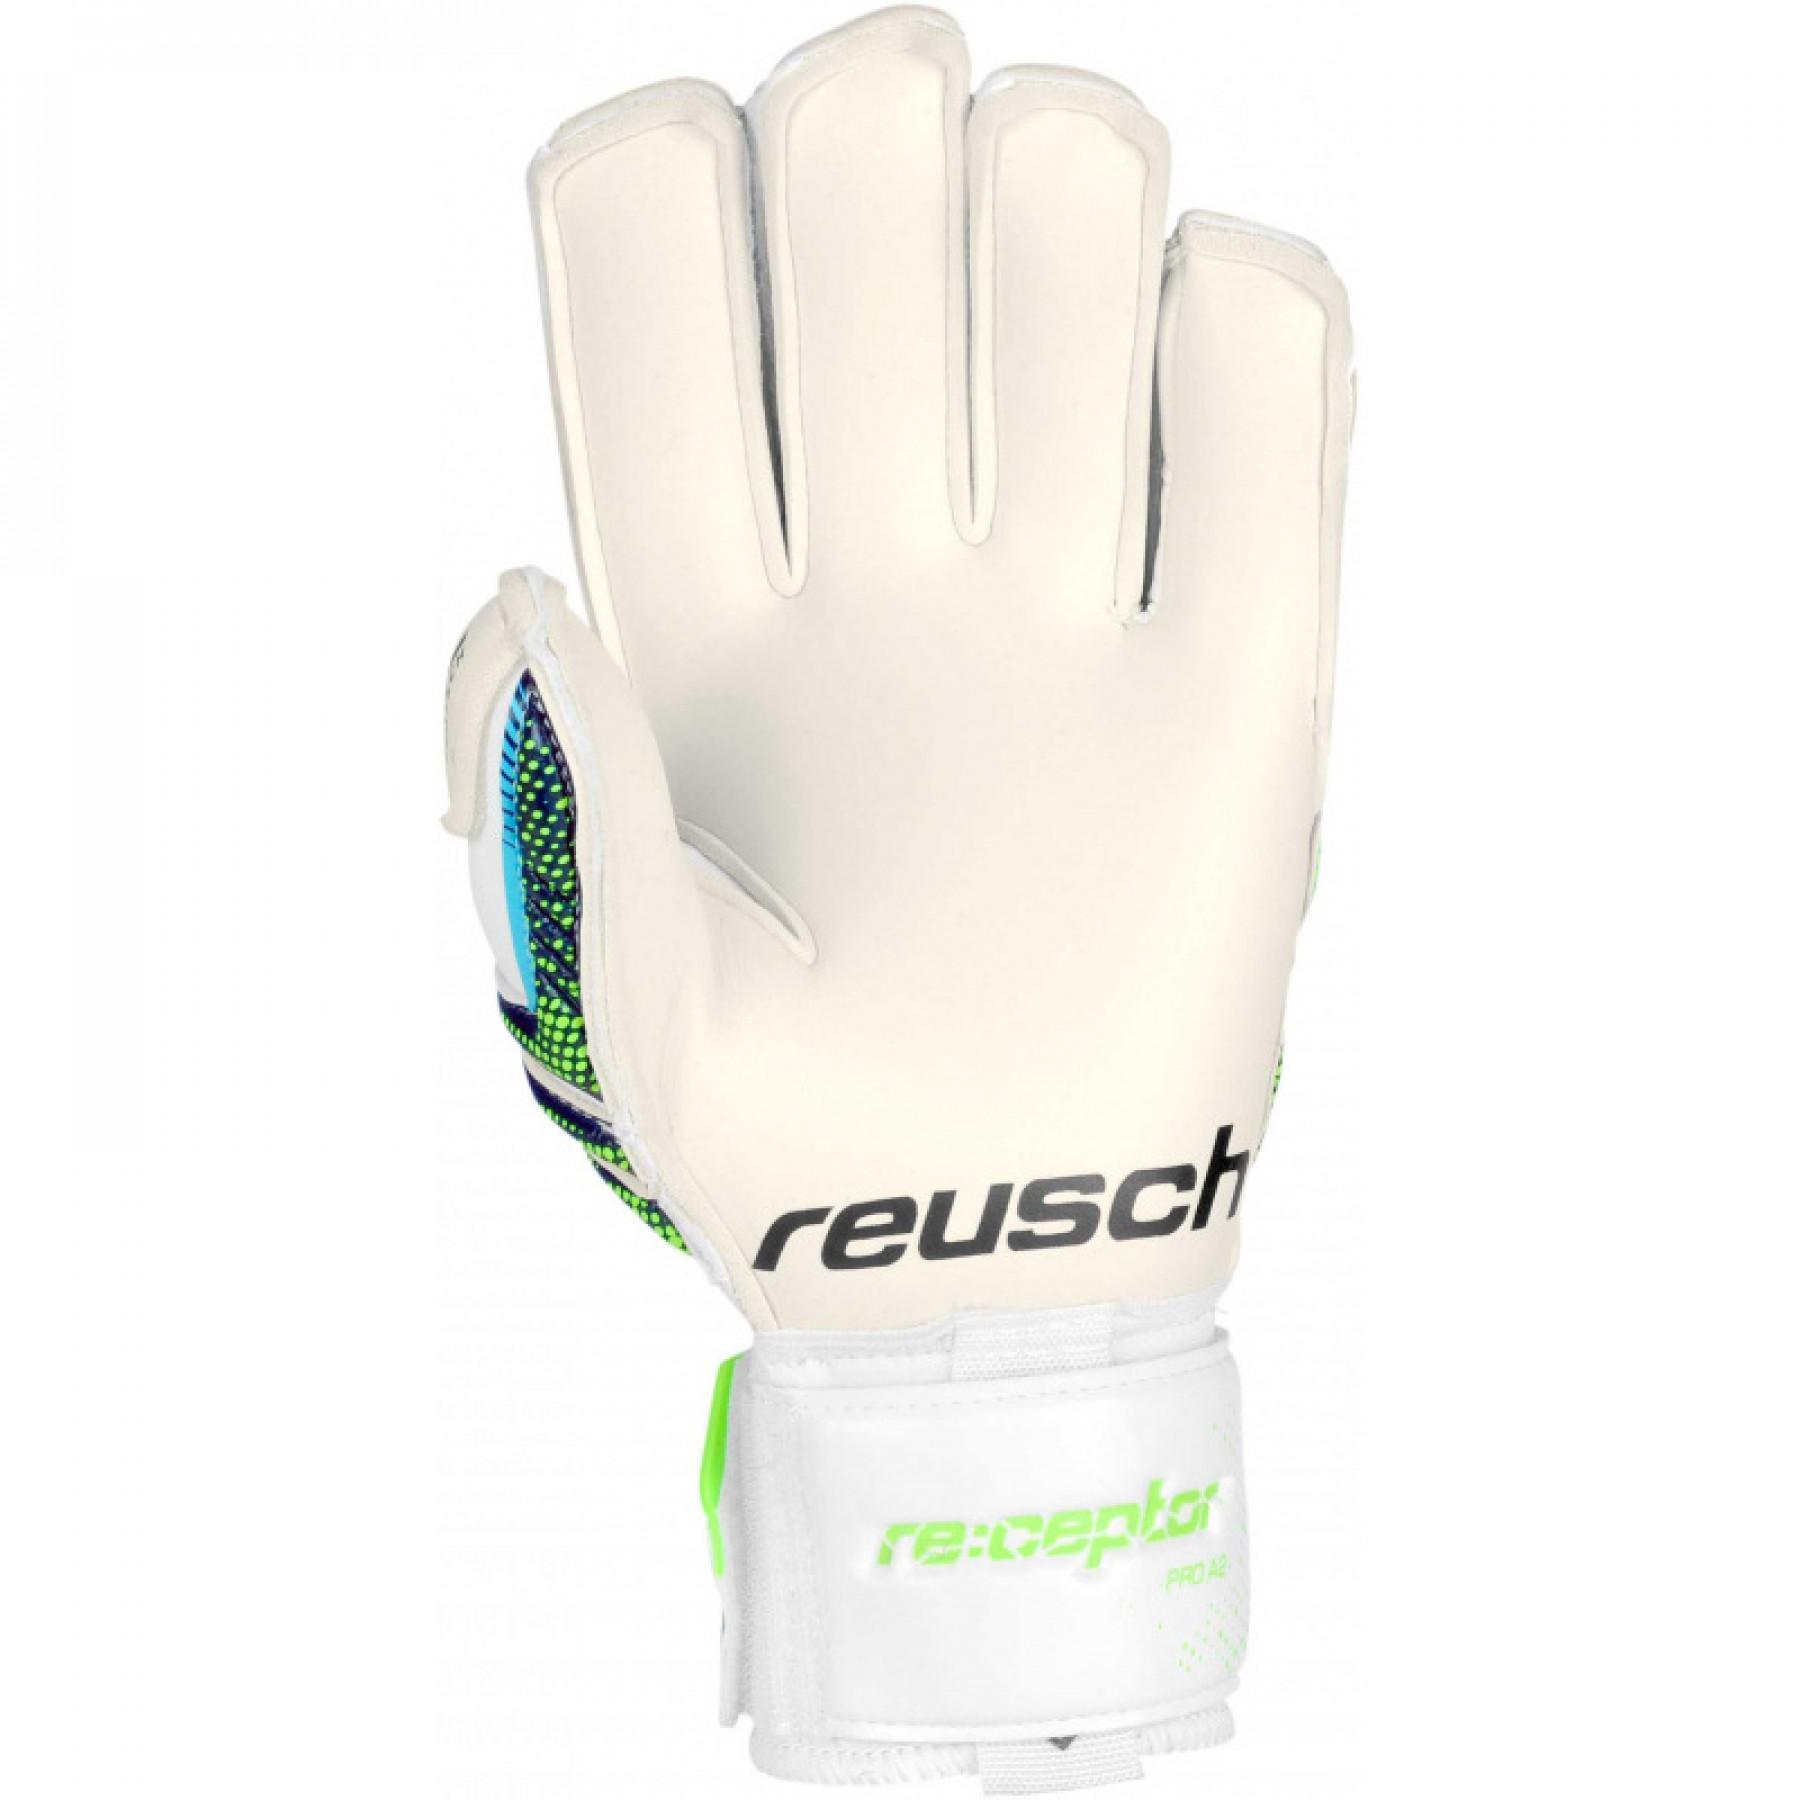 Goalkeeper gloves Reusch Re:ceptor Pro A2